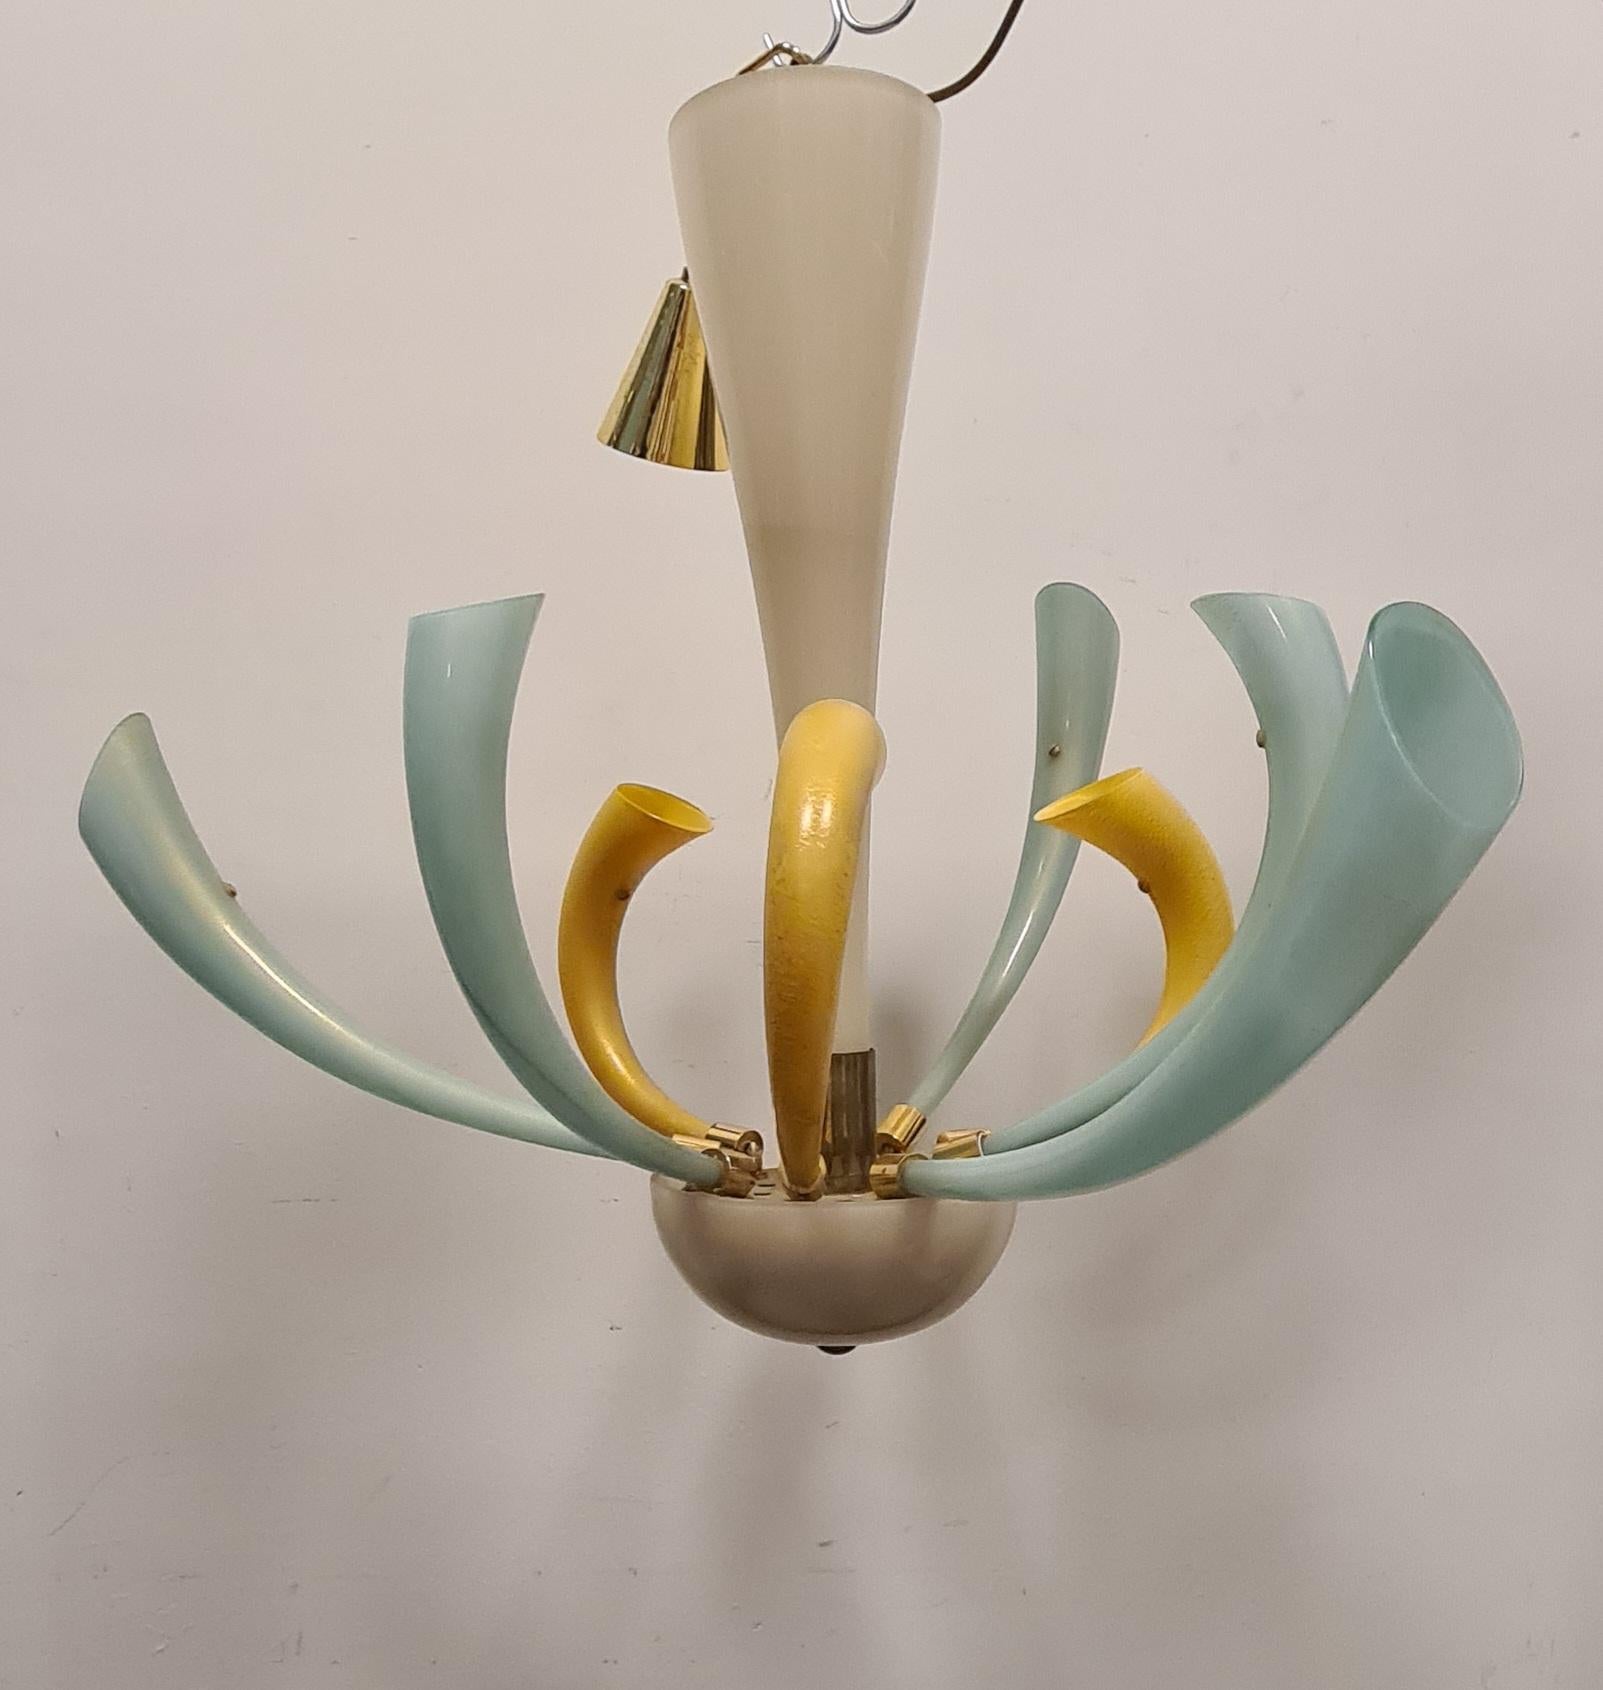 Lampadario modello Fuochi d'Artificio disegnato da Angelo Barovier per Barovier e Toso.

Raffinato lampadario a nove luci.

Composto da 9 flauti in vetro di murano soffiato, dai colori pastello con inclusioni di oro 24 carati.

Presenta un corpo in